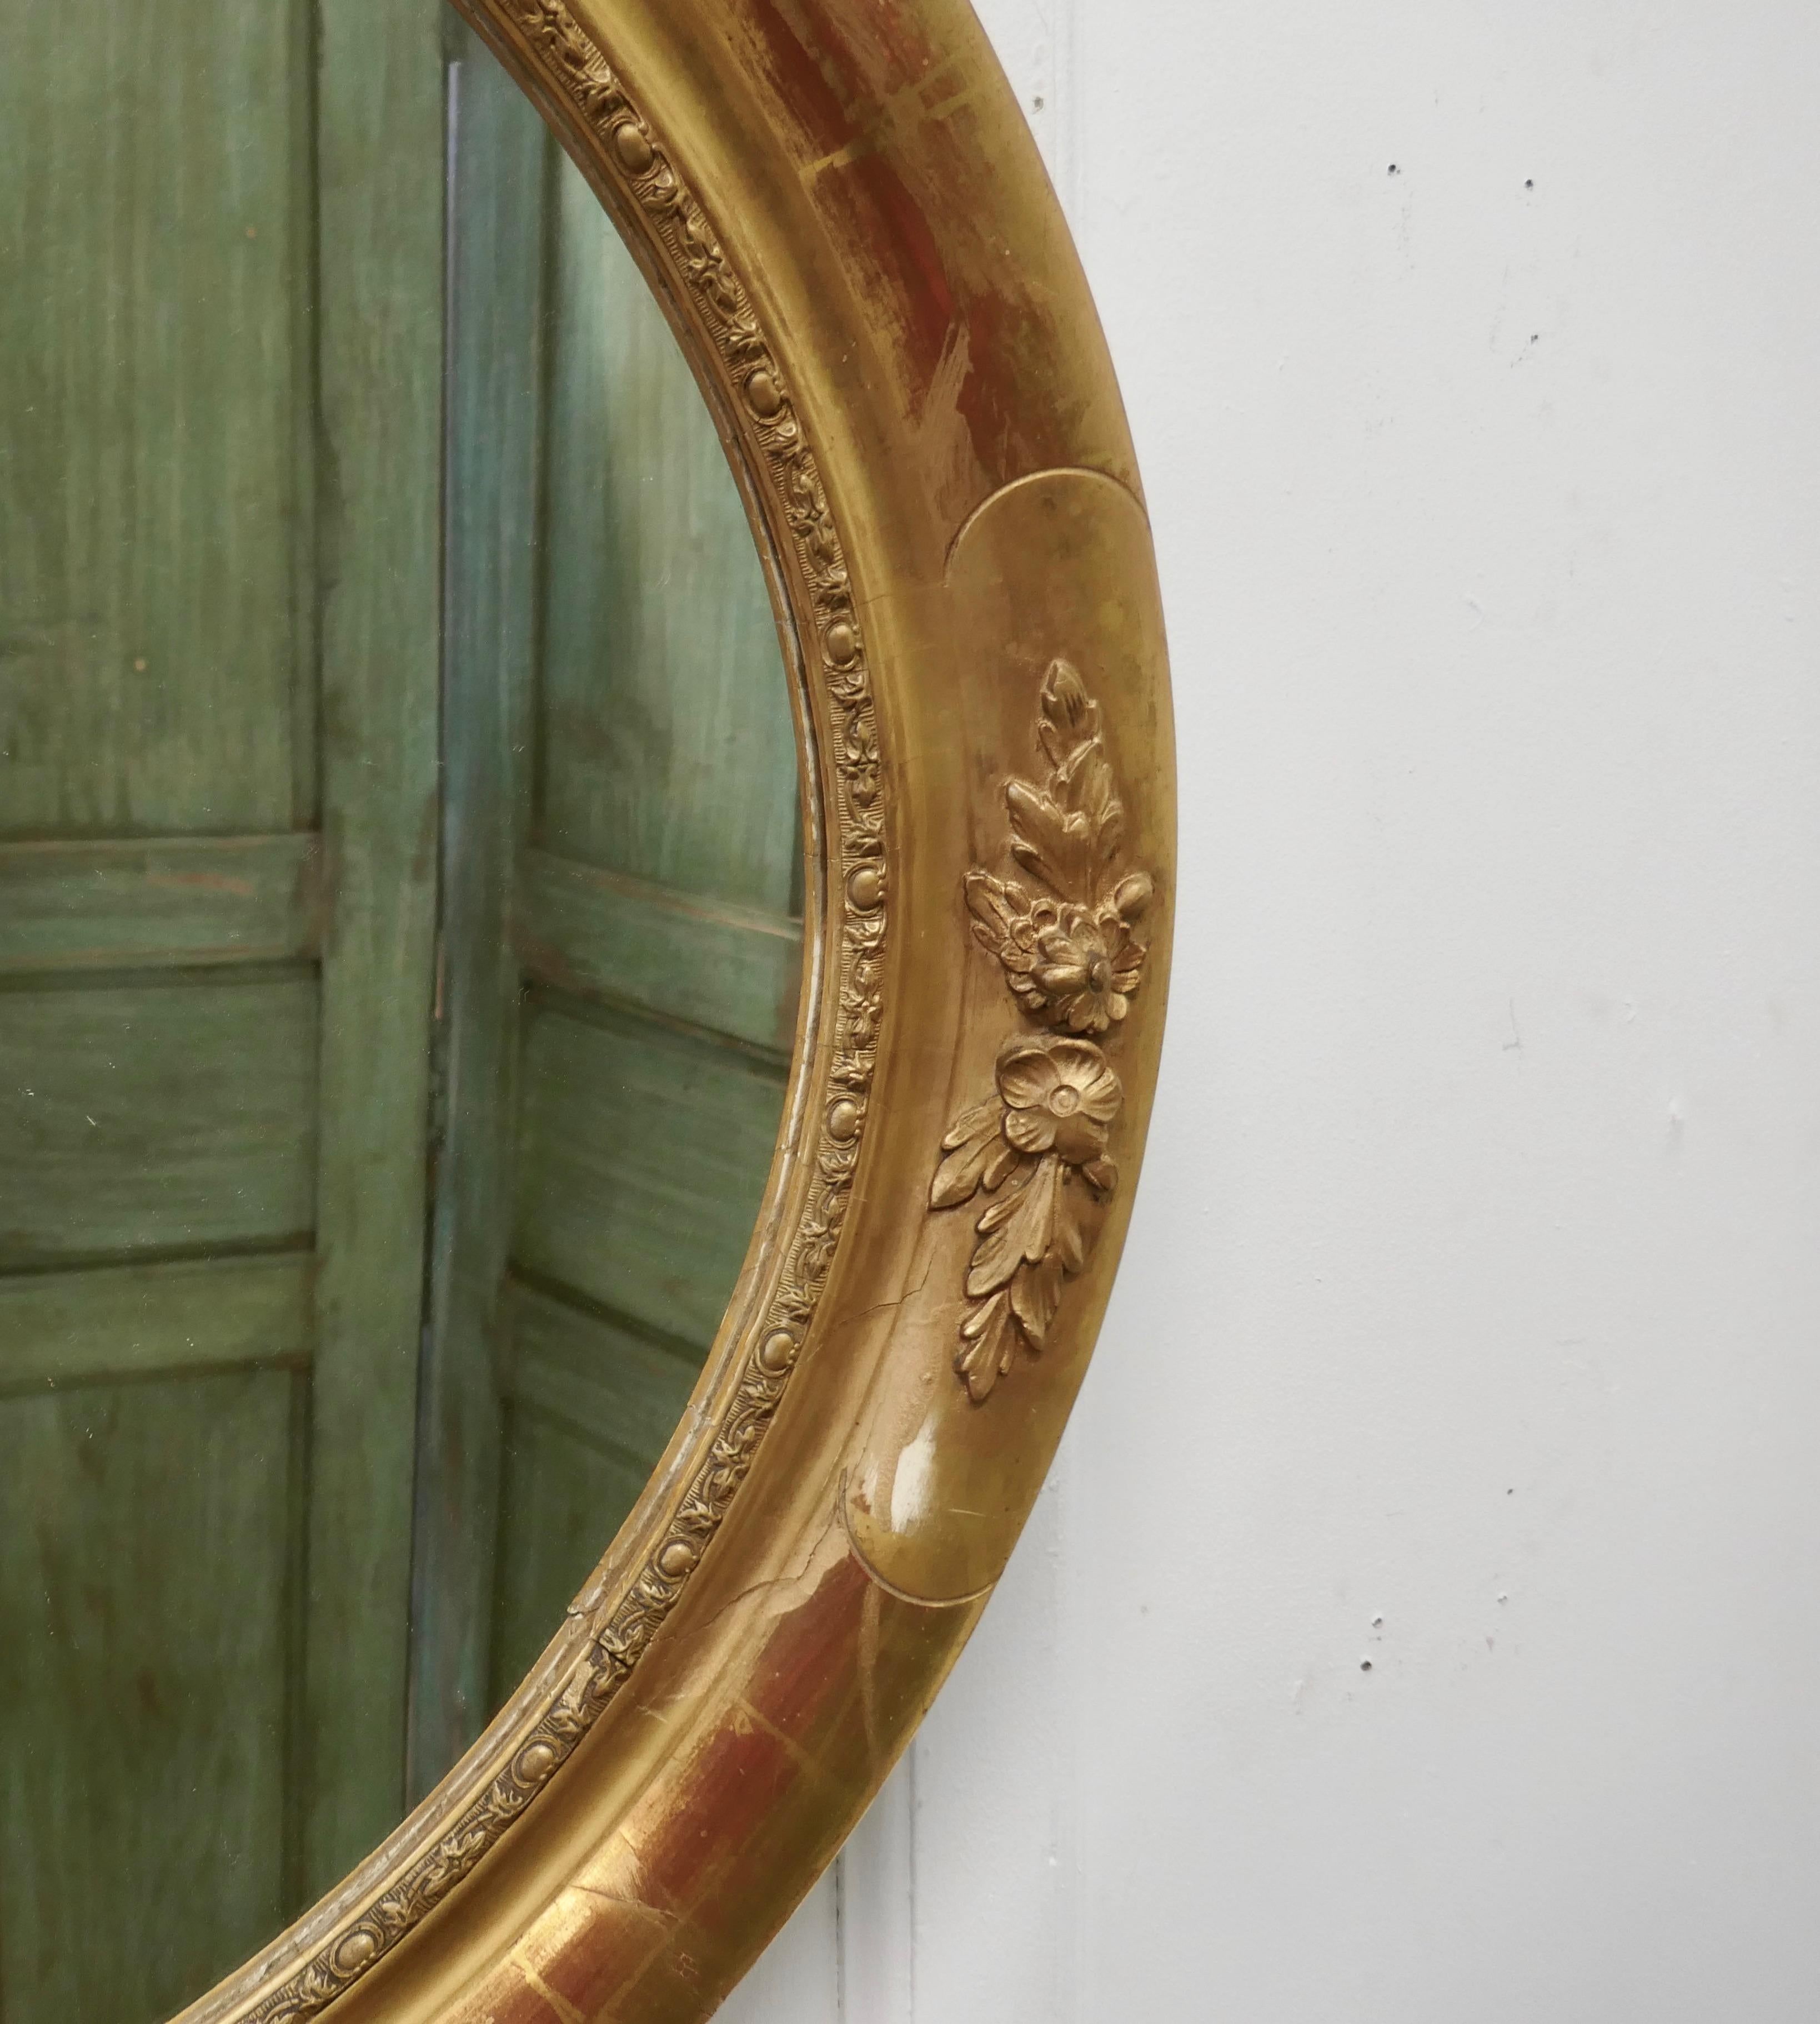 oval gilt mirror